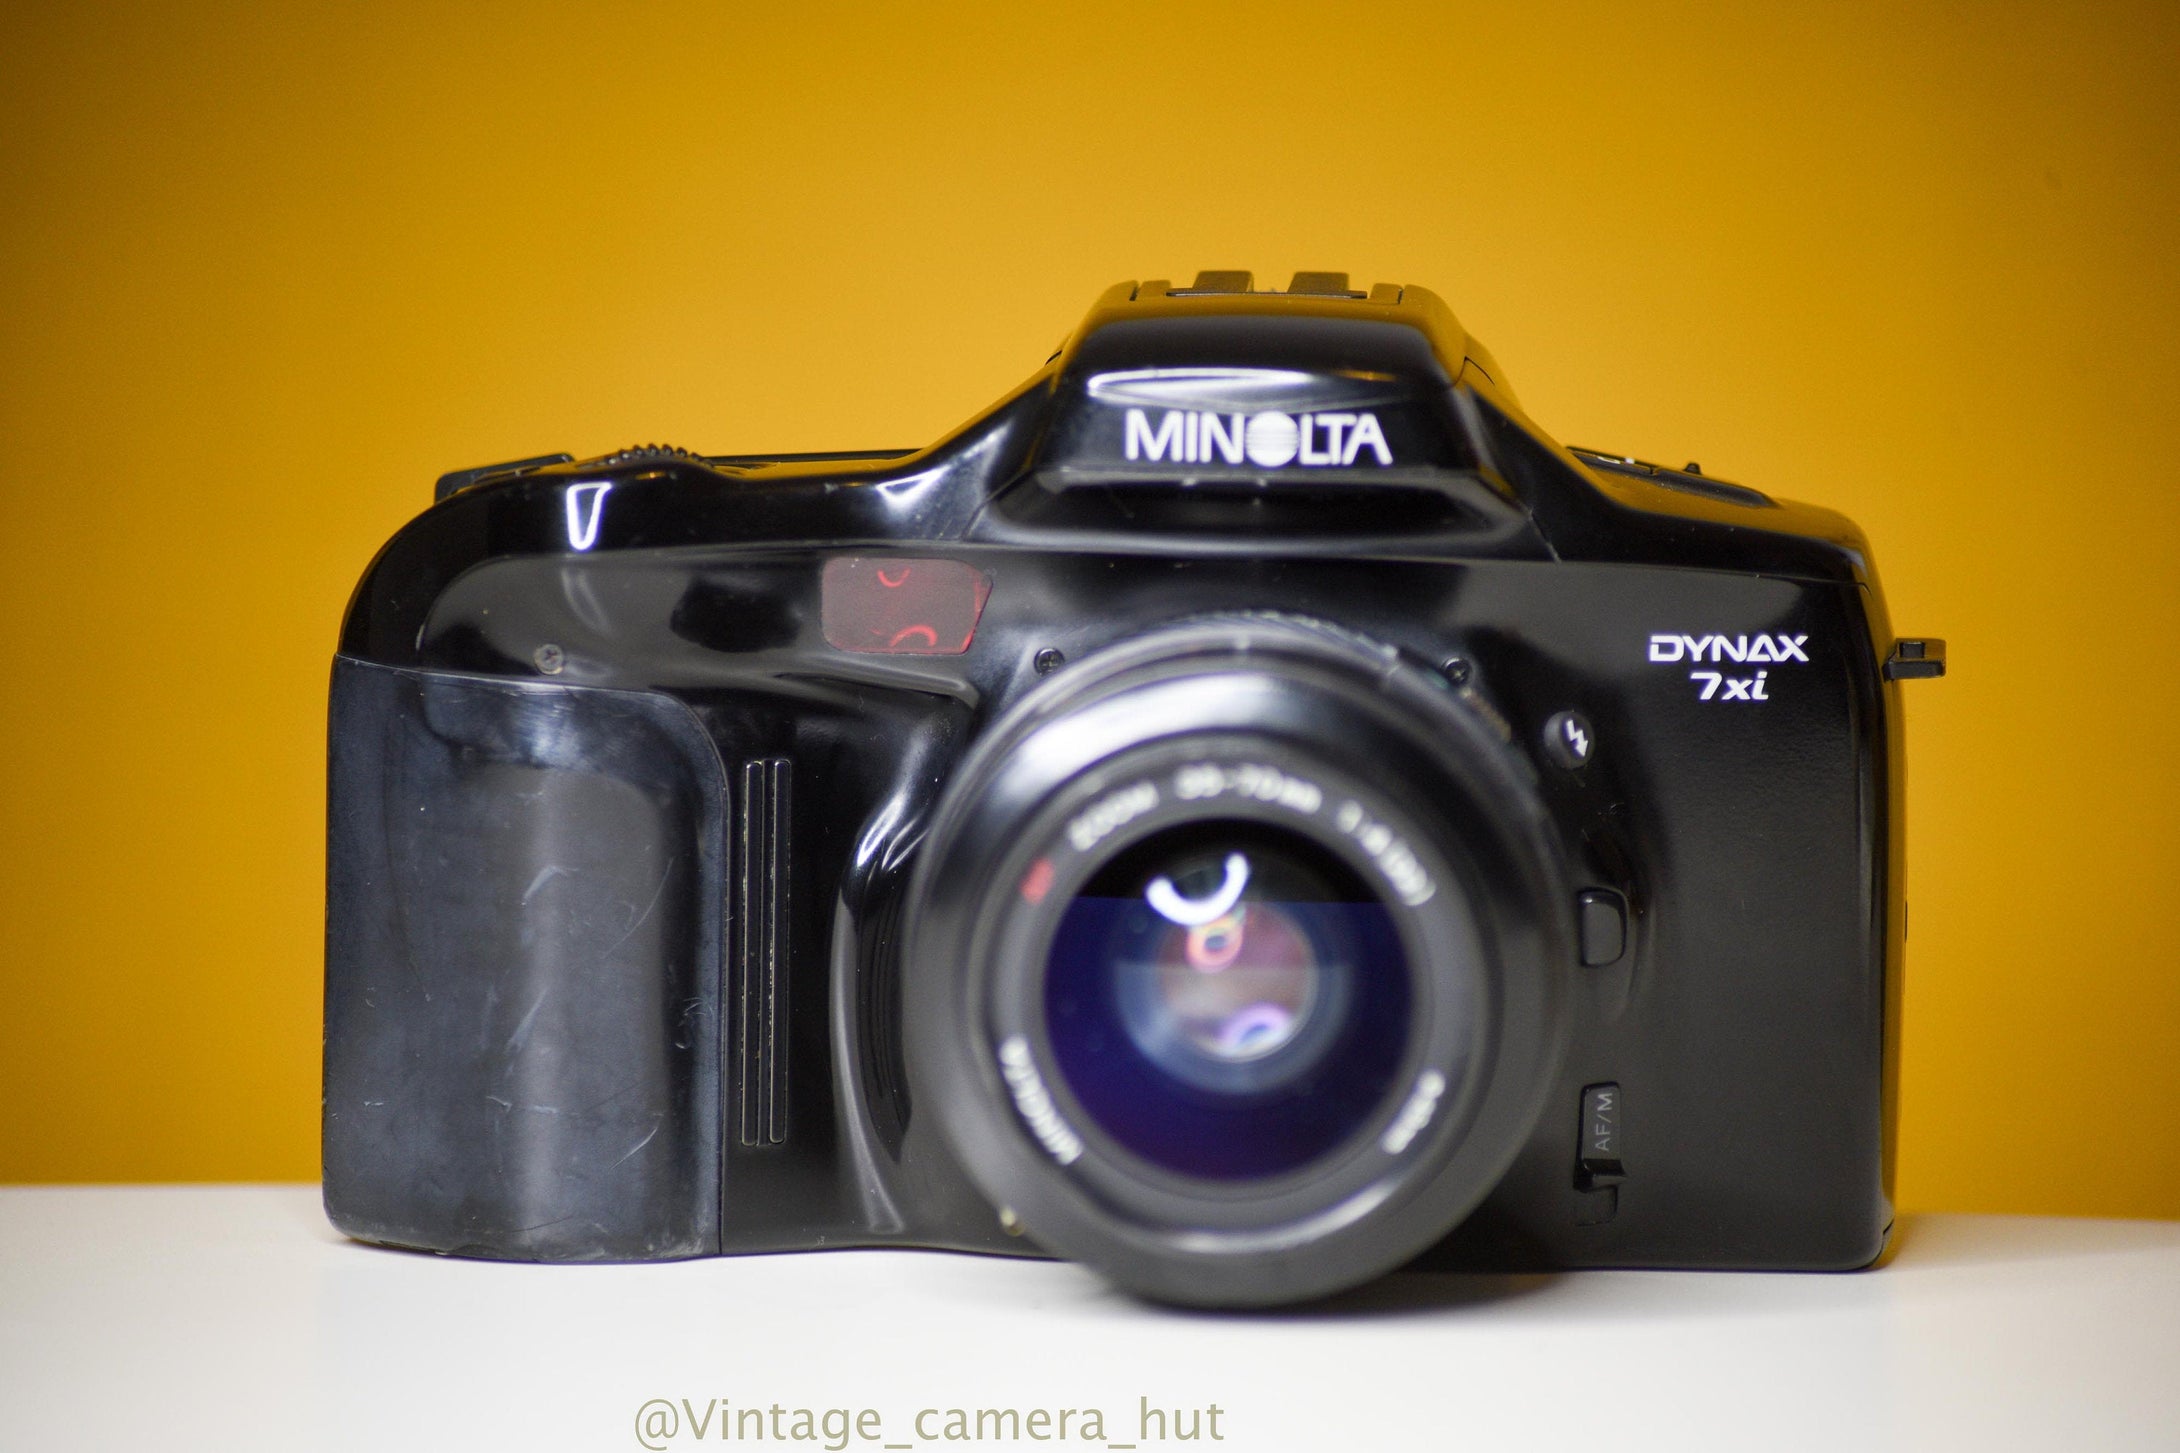 Minolta Dynax 7xi 35mm Film Camera with Minolta AF Zoom 35-70mm f/4 Lens